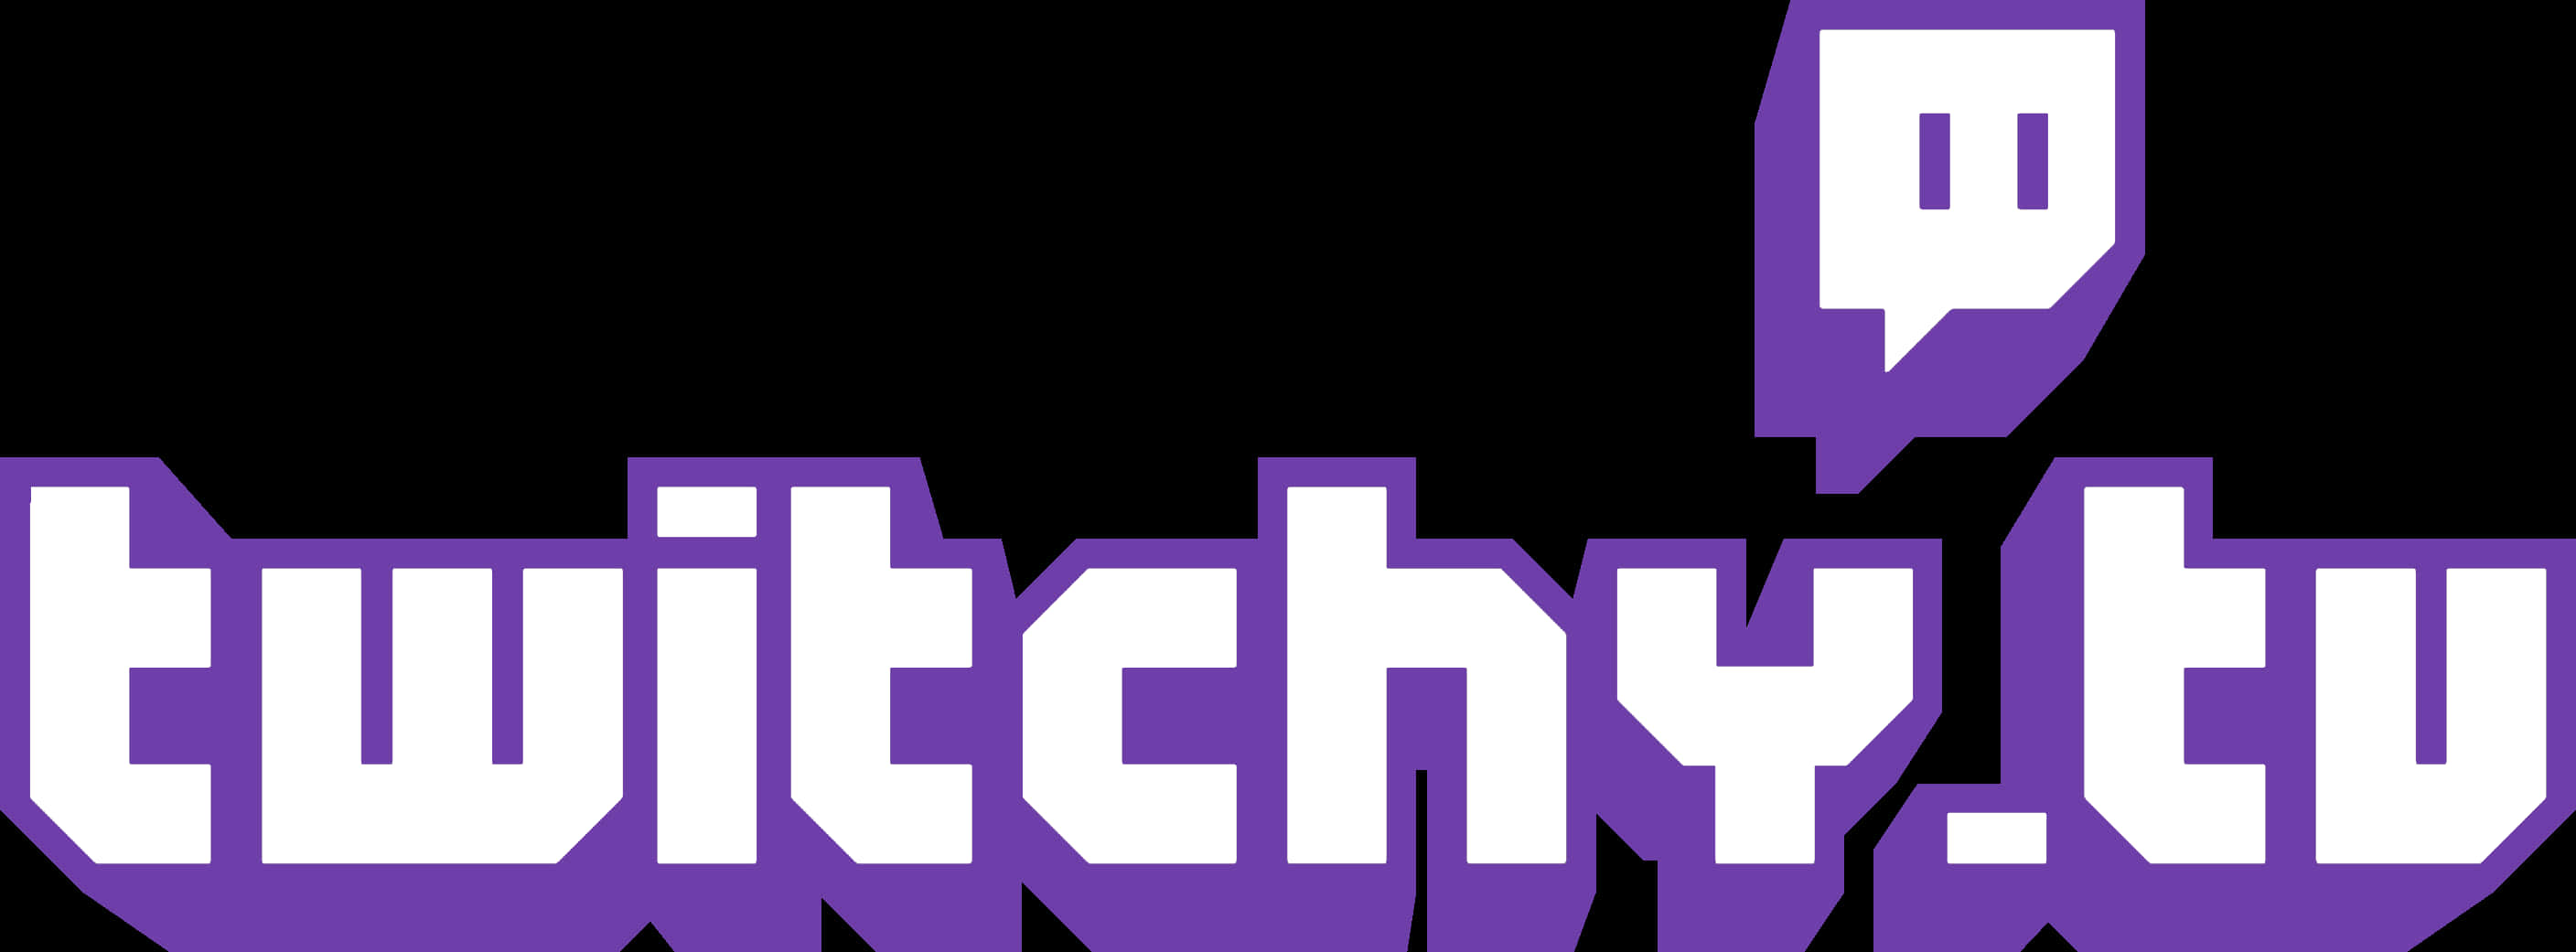 Twitch Logo Modified